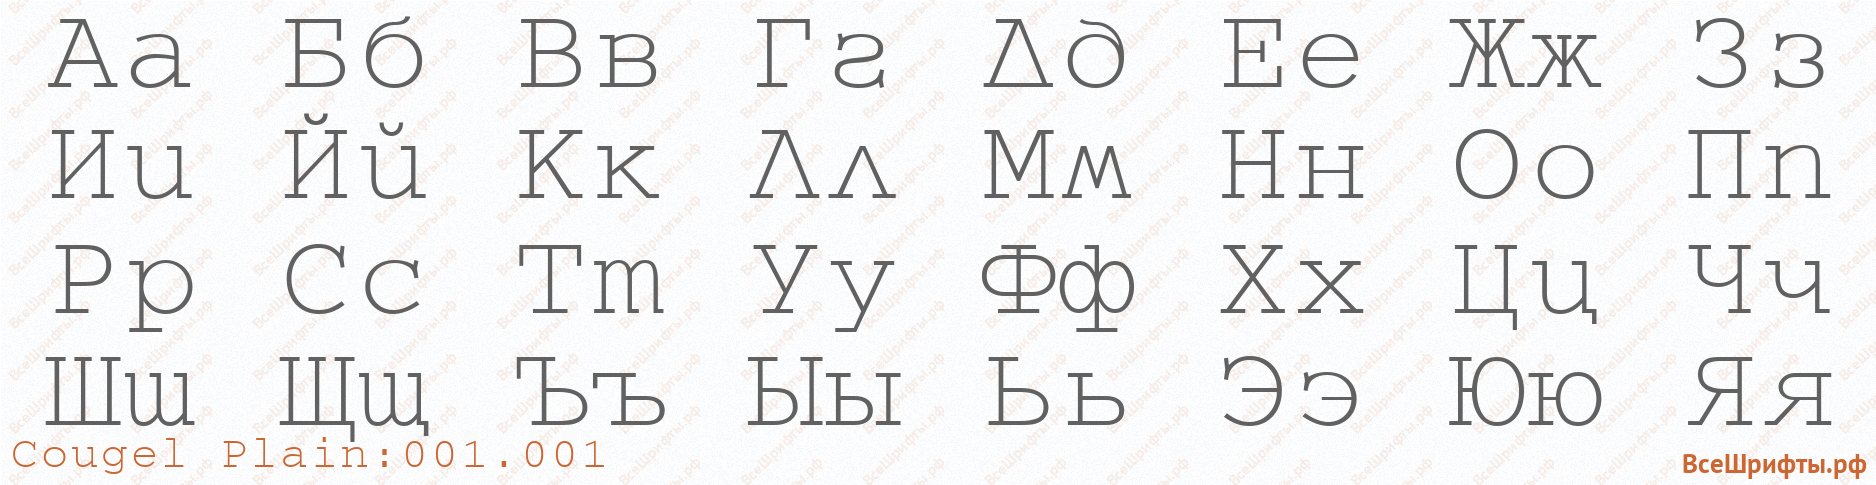 Шрифт Cougel Plain:001.001 с русскими буквами